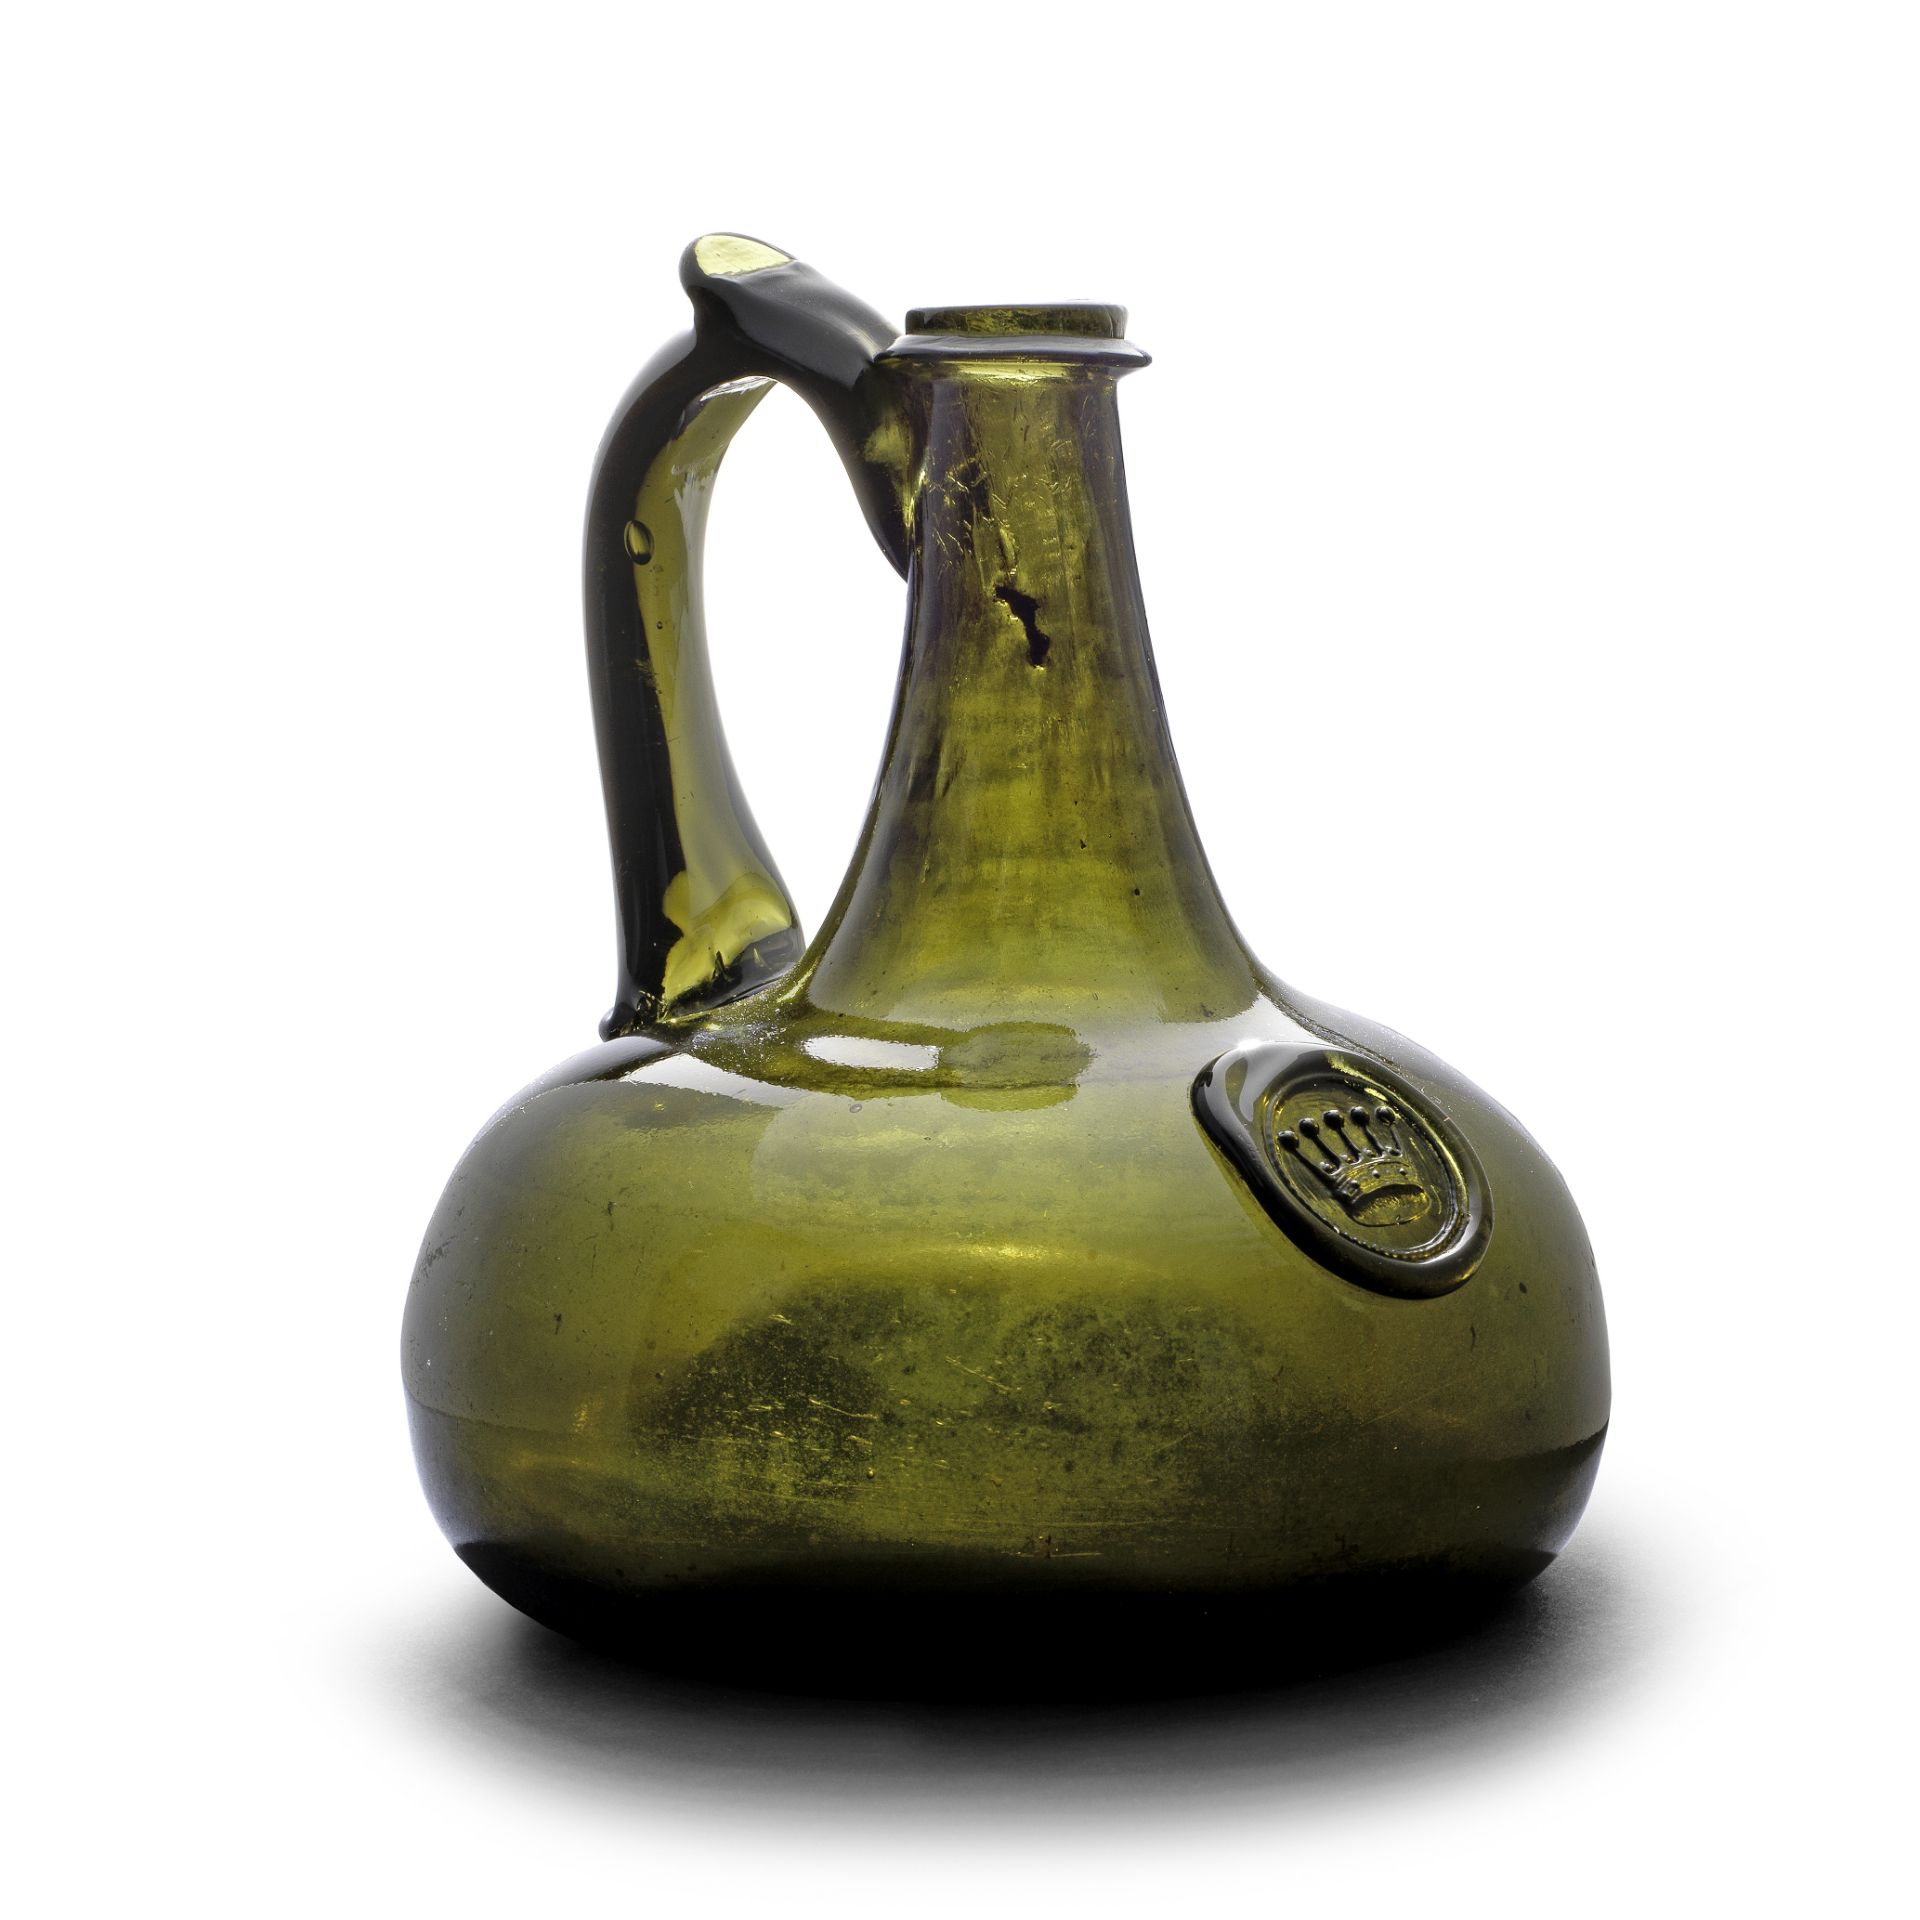 A very rare sealed decanter bottle, circa 1700